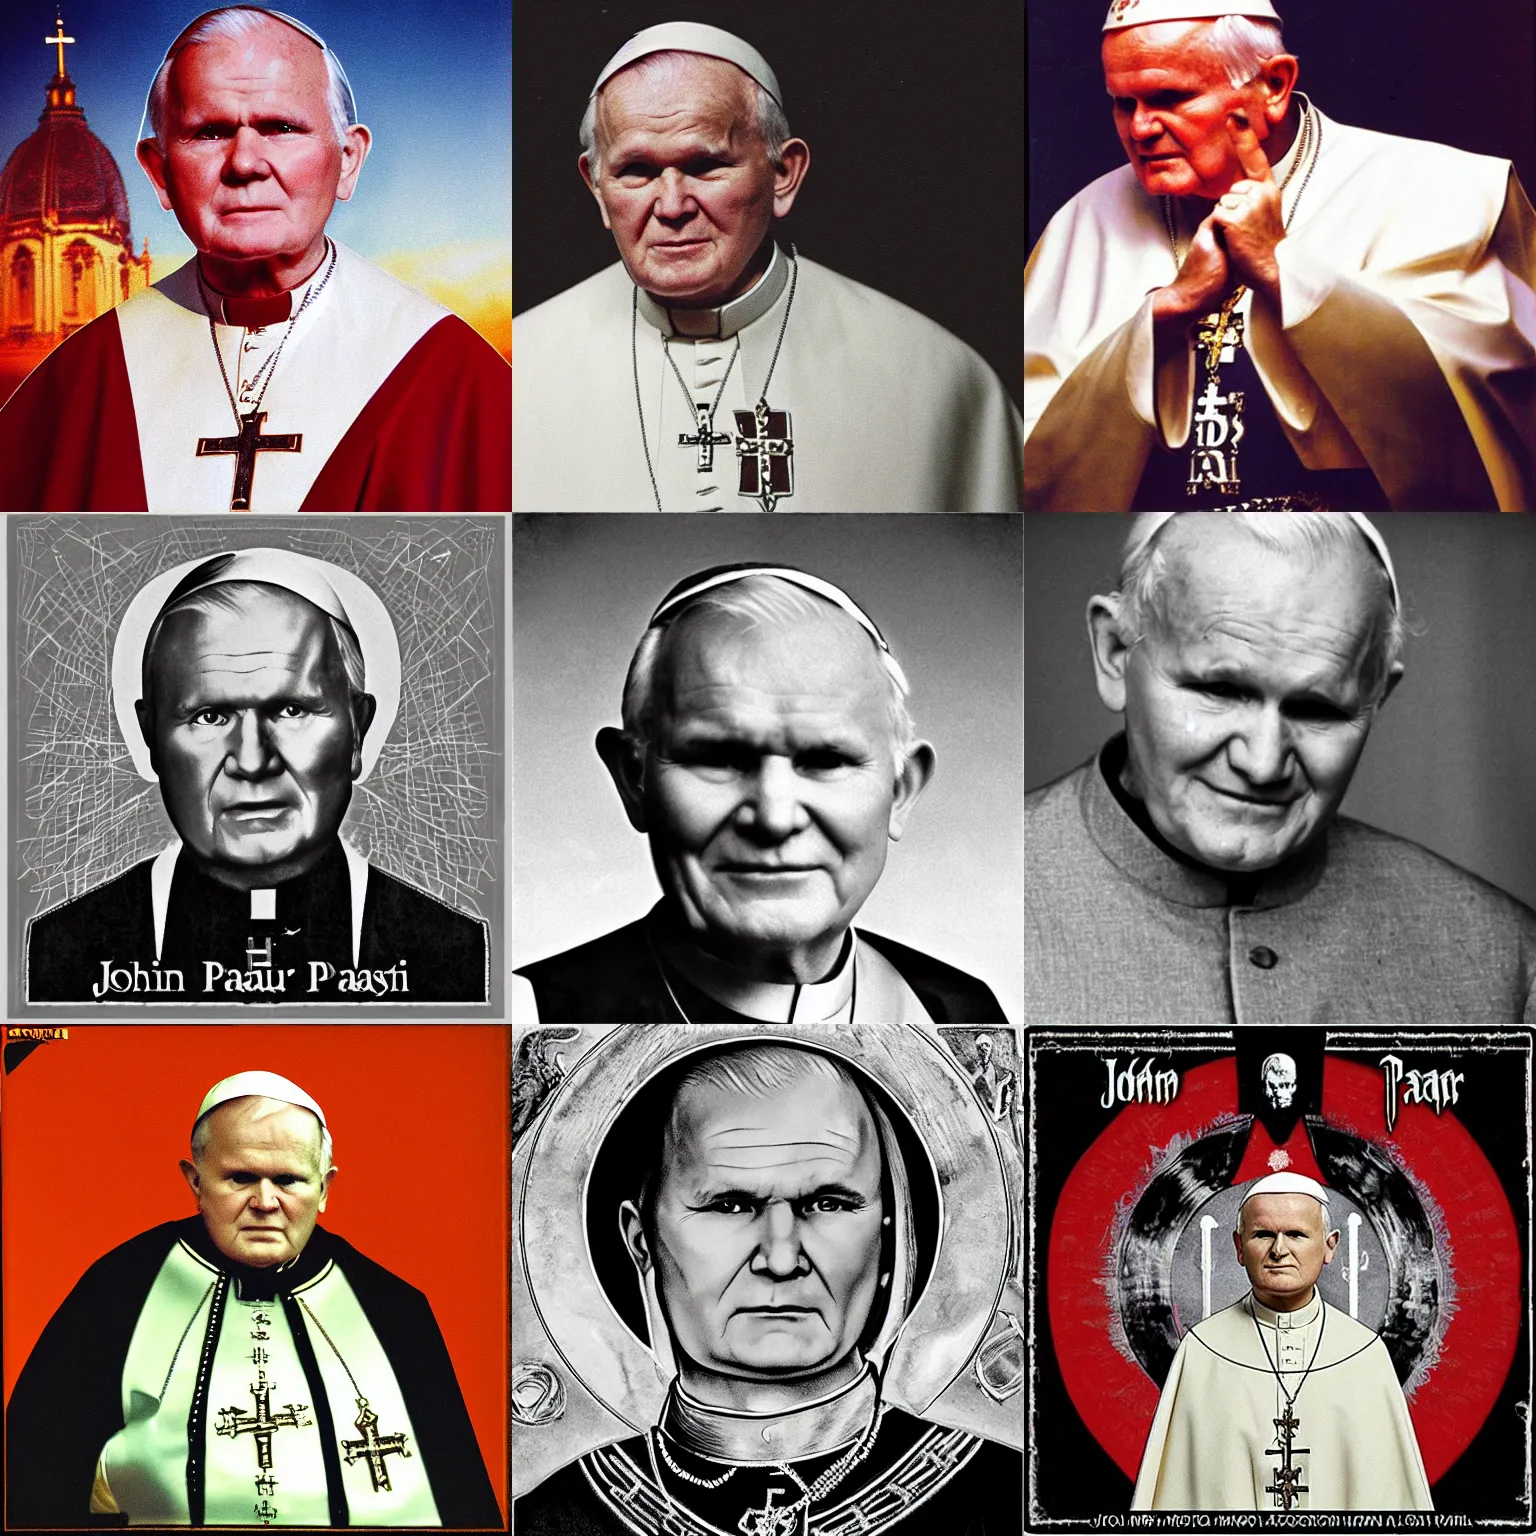 Prompt: John Paul II, metal album cover